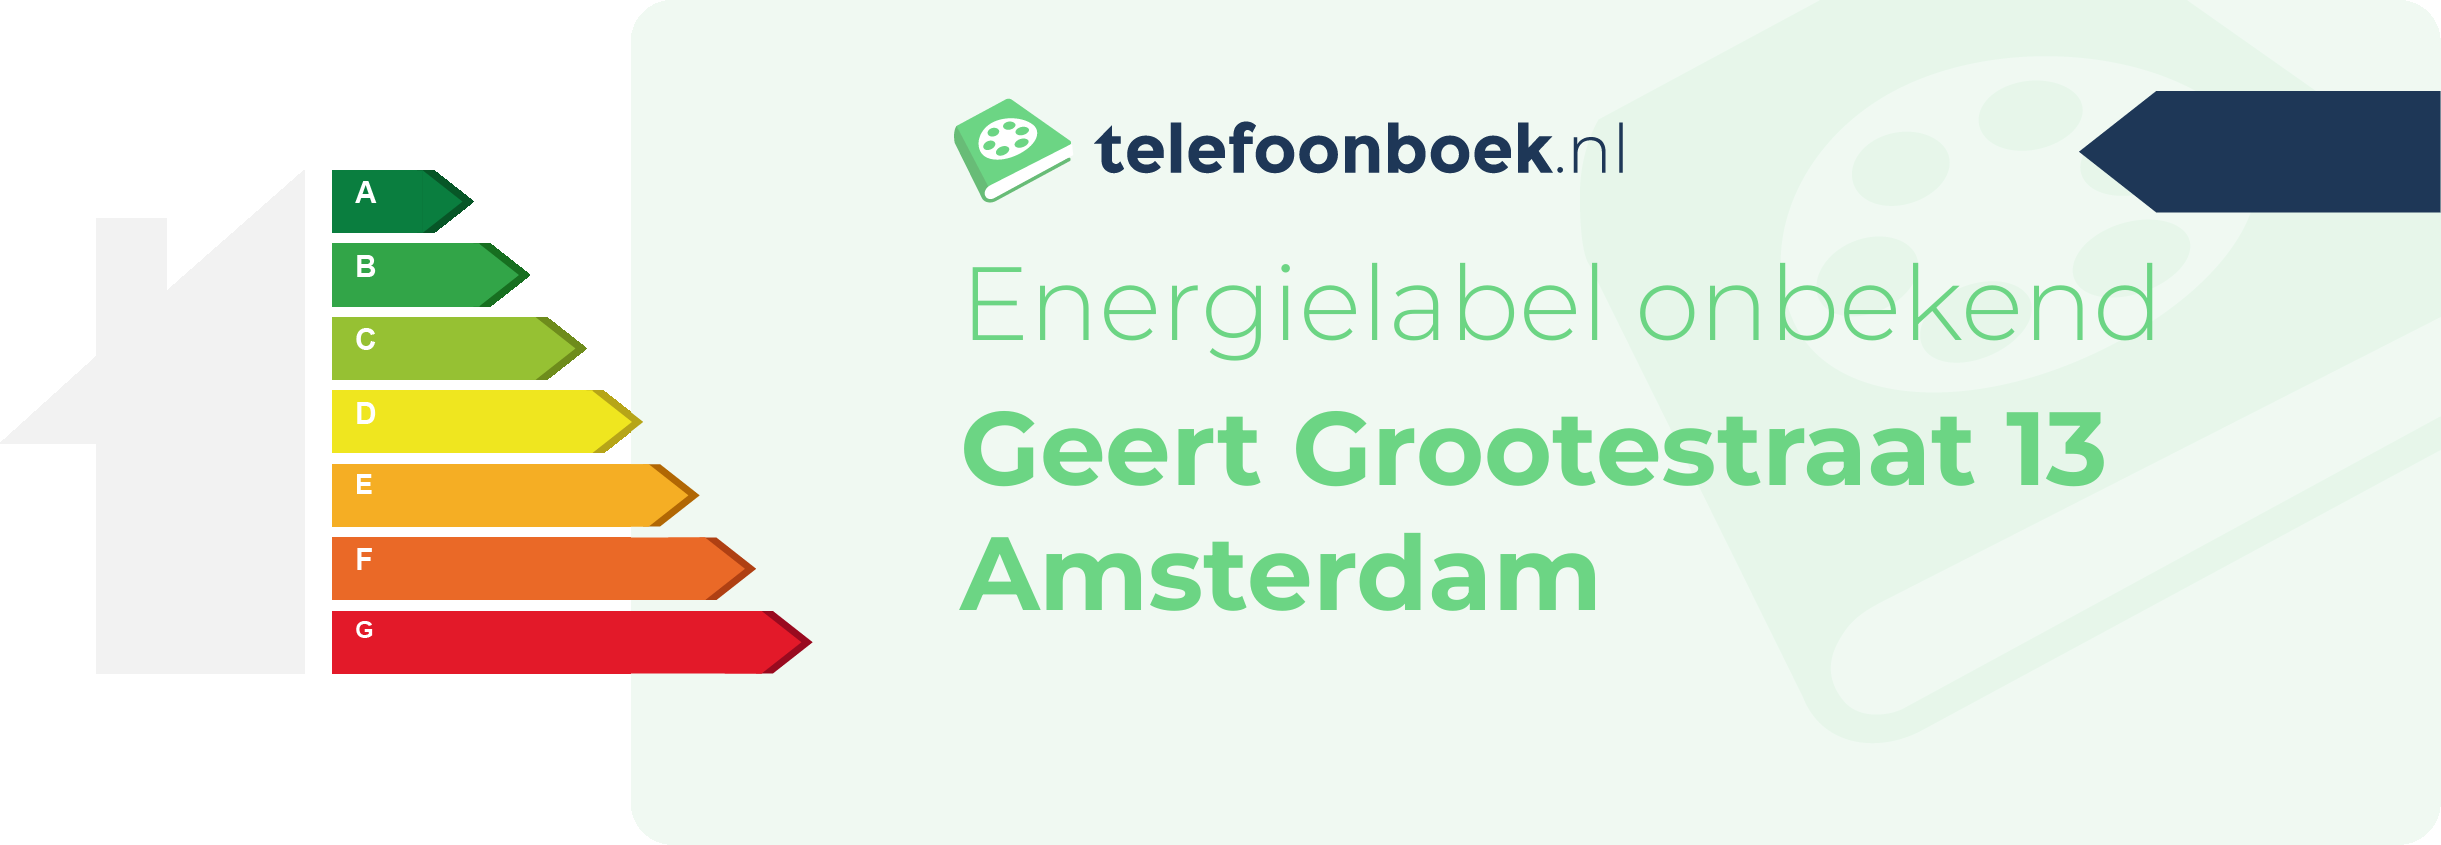 Energielabel Geert Grootestraat 13 Amsterdam